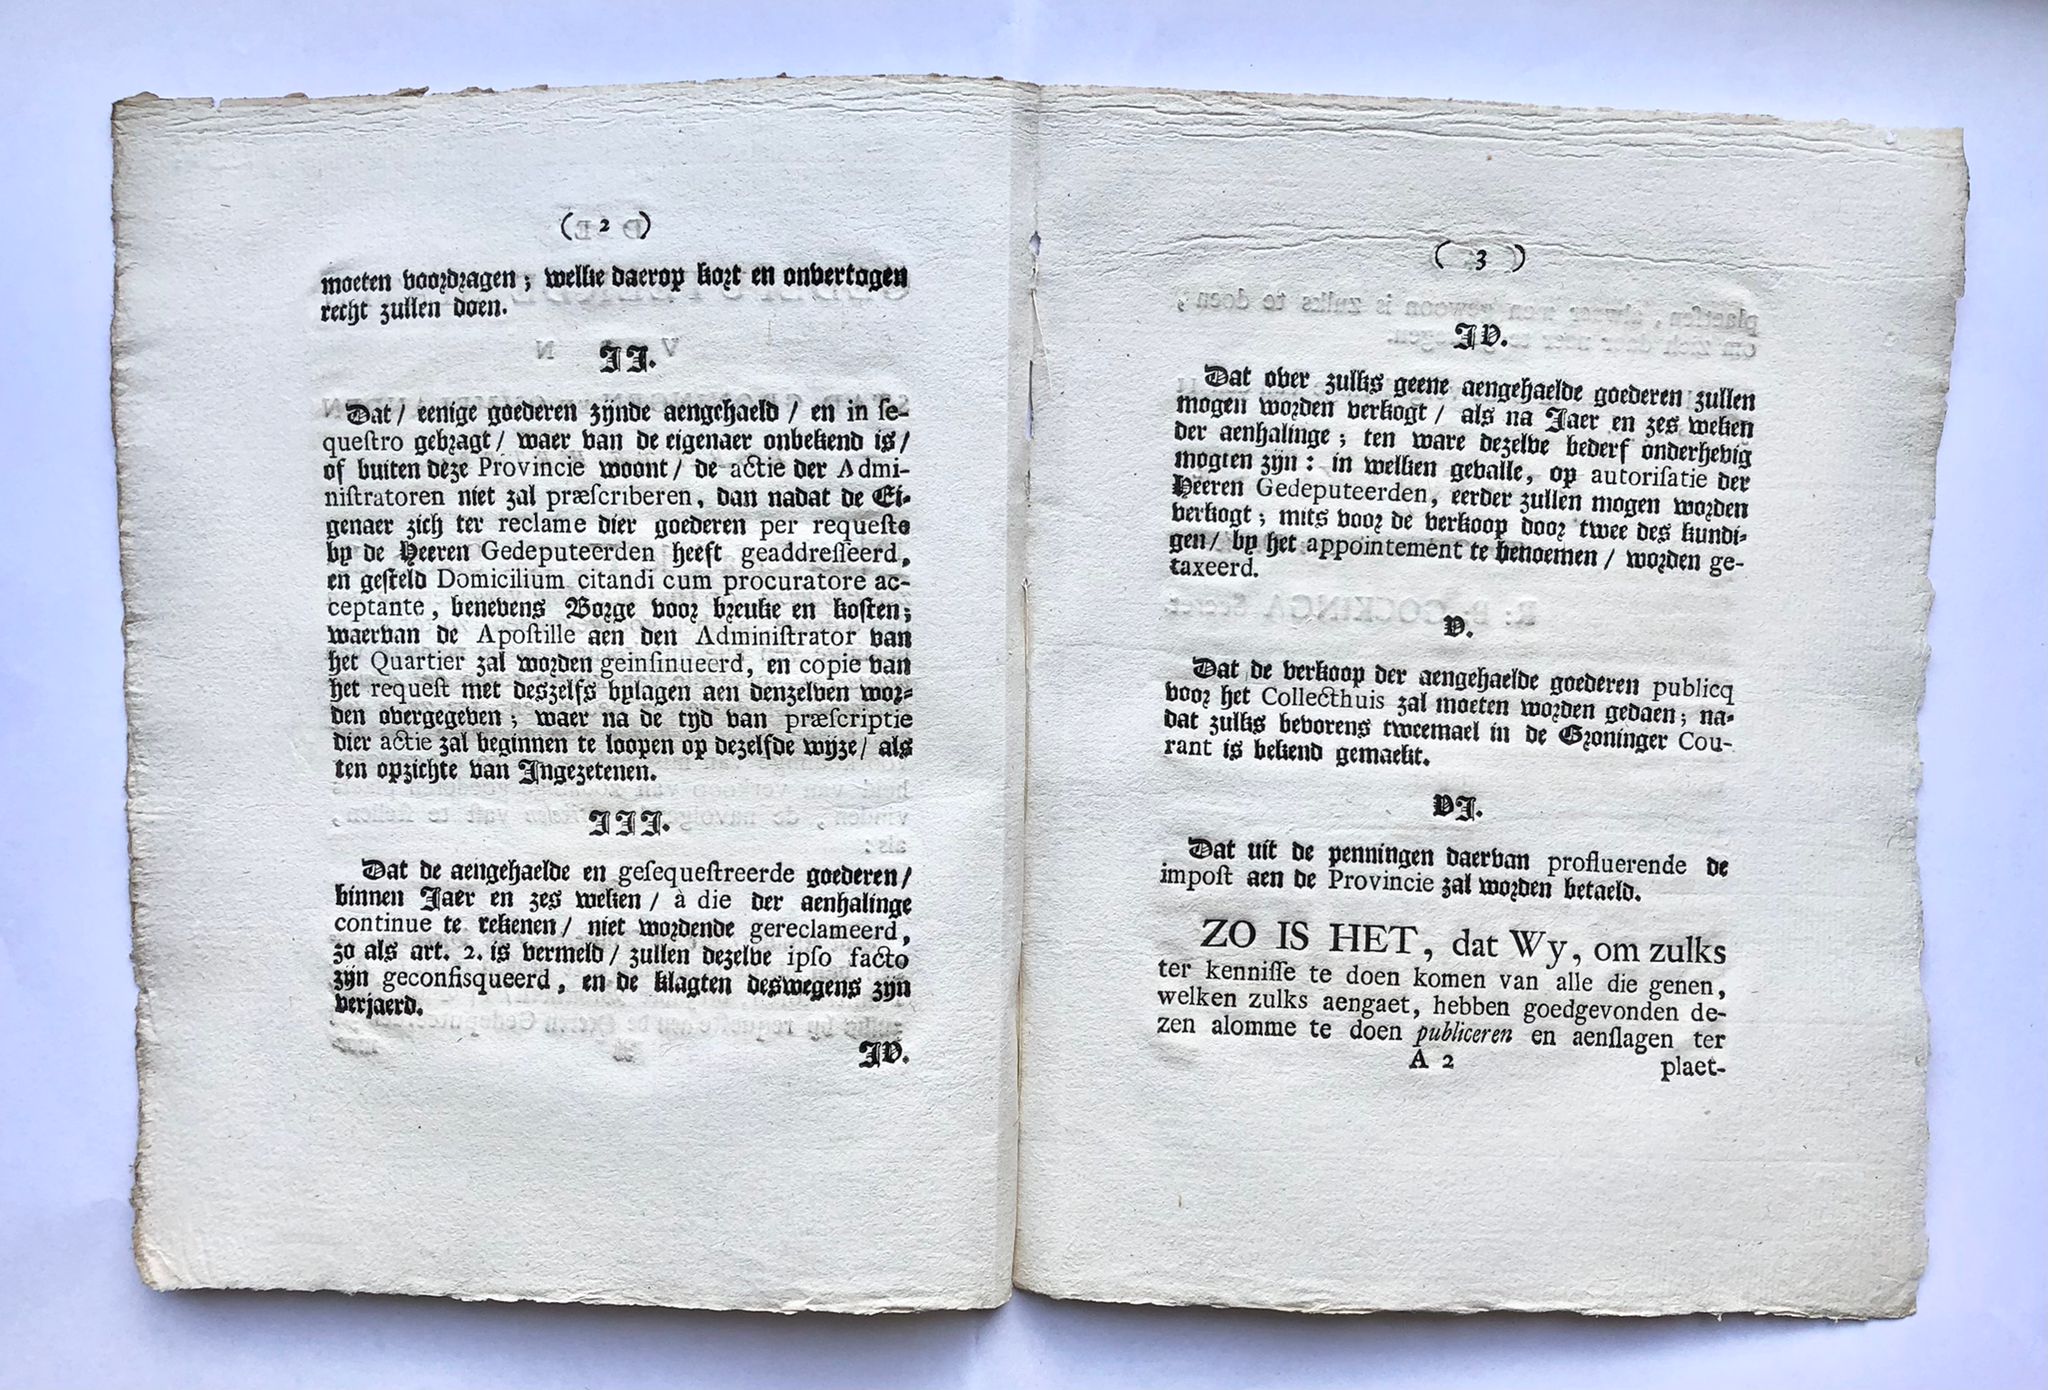 [Groningen, 1776] De gedeputeerde Staten van Stad Groningen en Ommelanden doen te weten: (etc.), 1776, No. 54, 4 pp.